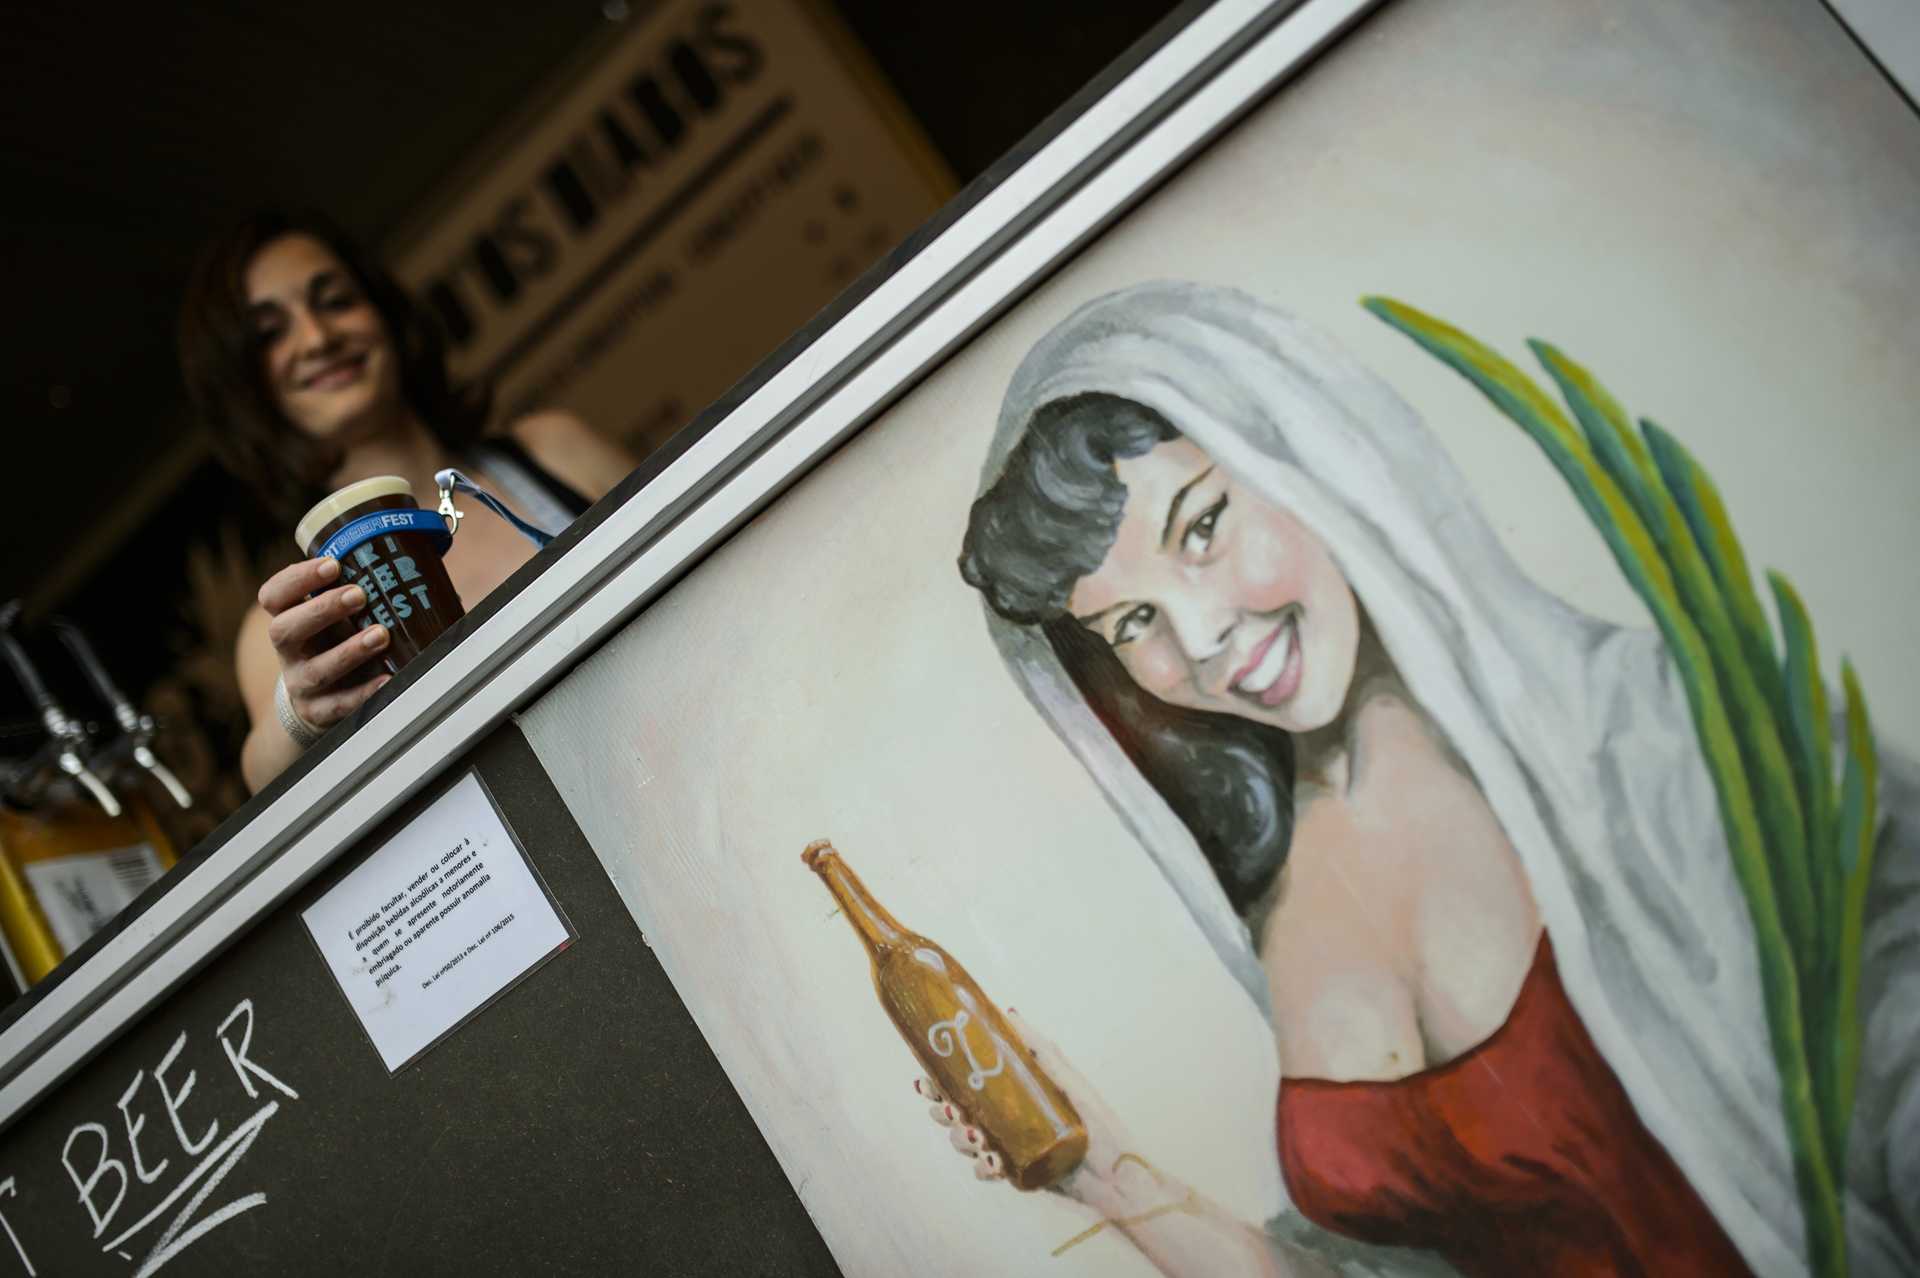 Artbeerfest – festival de cerveja artesanal em Caminha